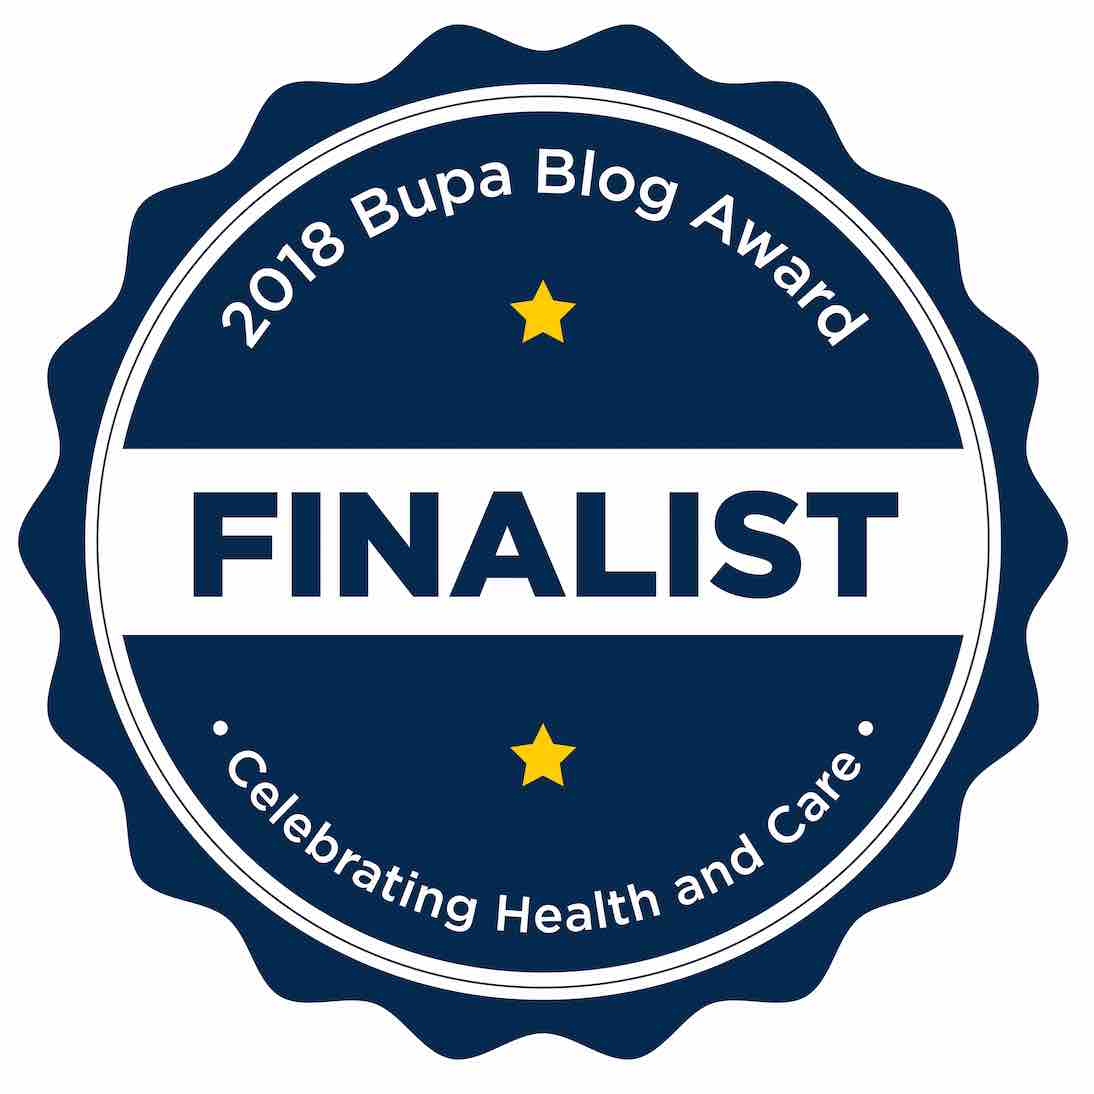 BUPA blog award finalist